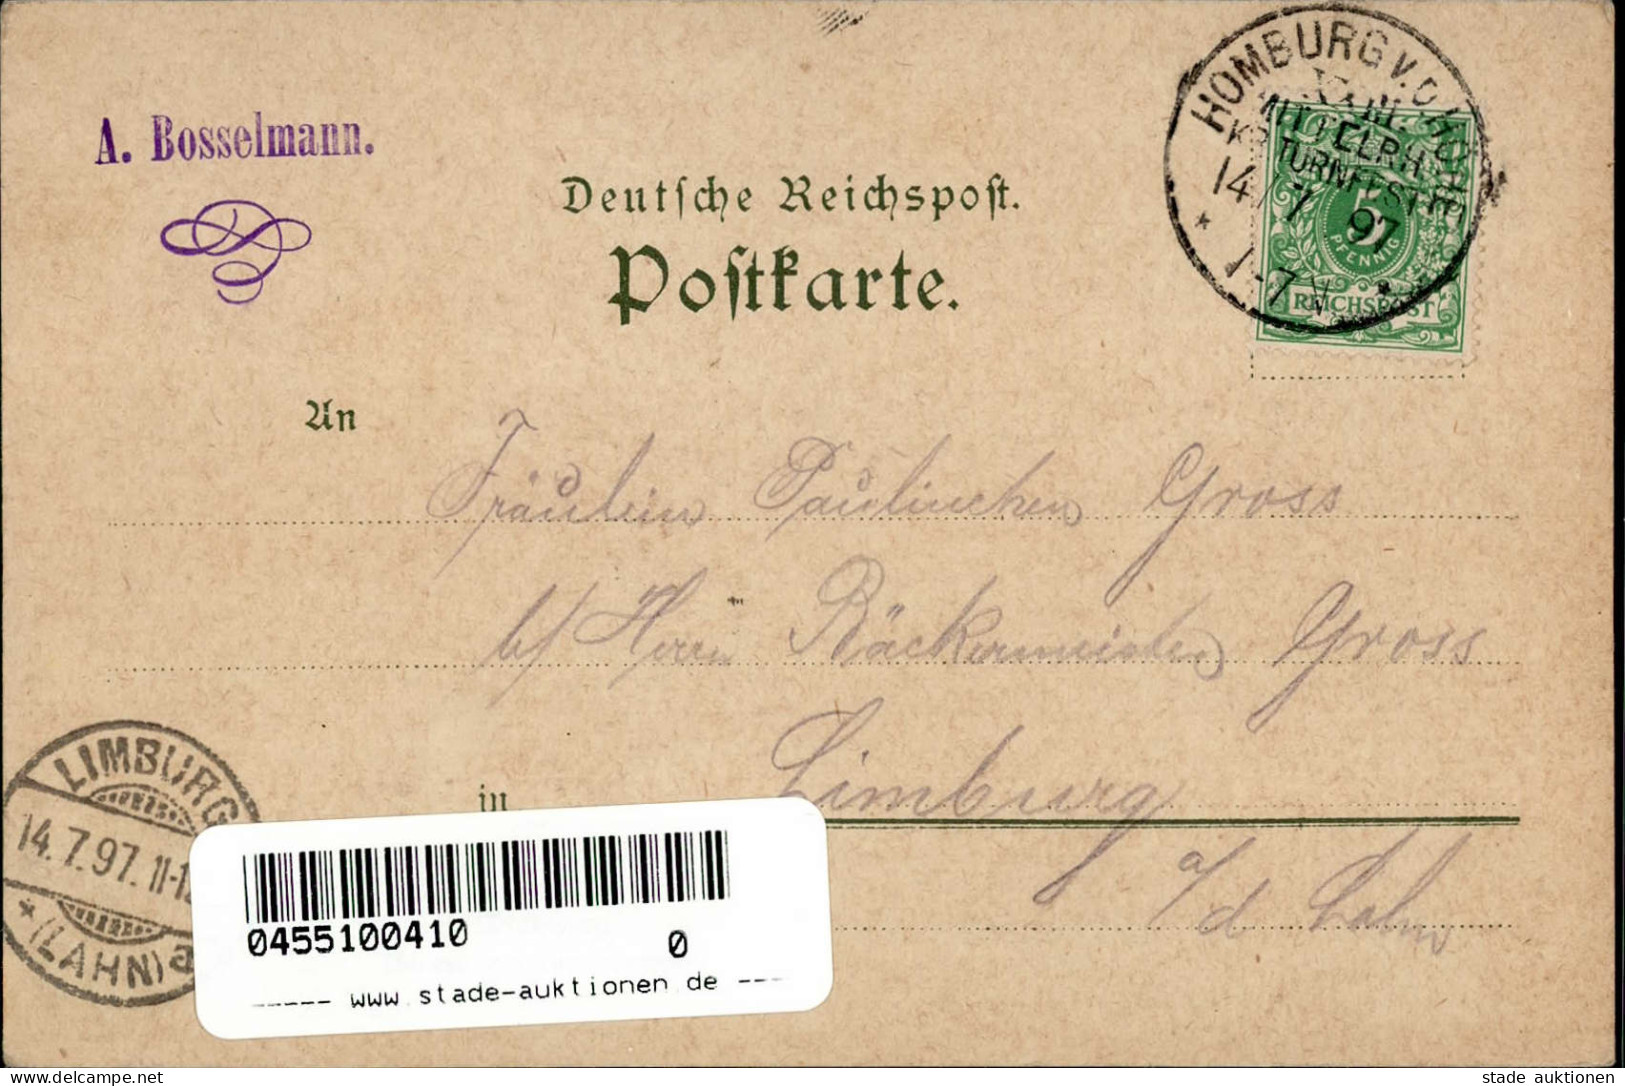 BAD HOMBURG - Gruss Vom 23.Mittlerh. KREISTURNFEST 1897 Mit S-o I-II Montagnes - Ausstellungen